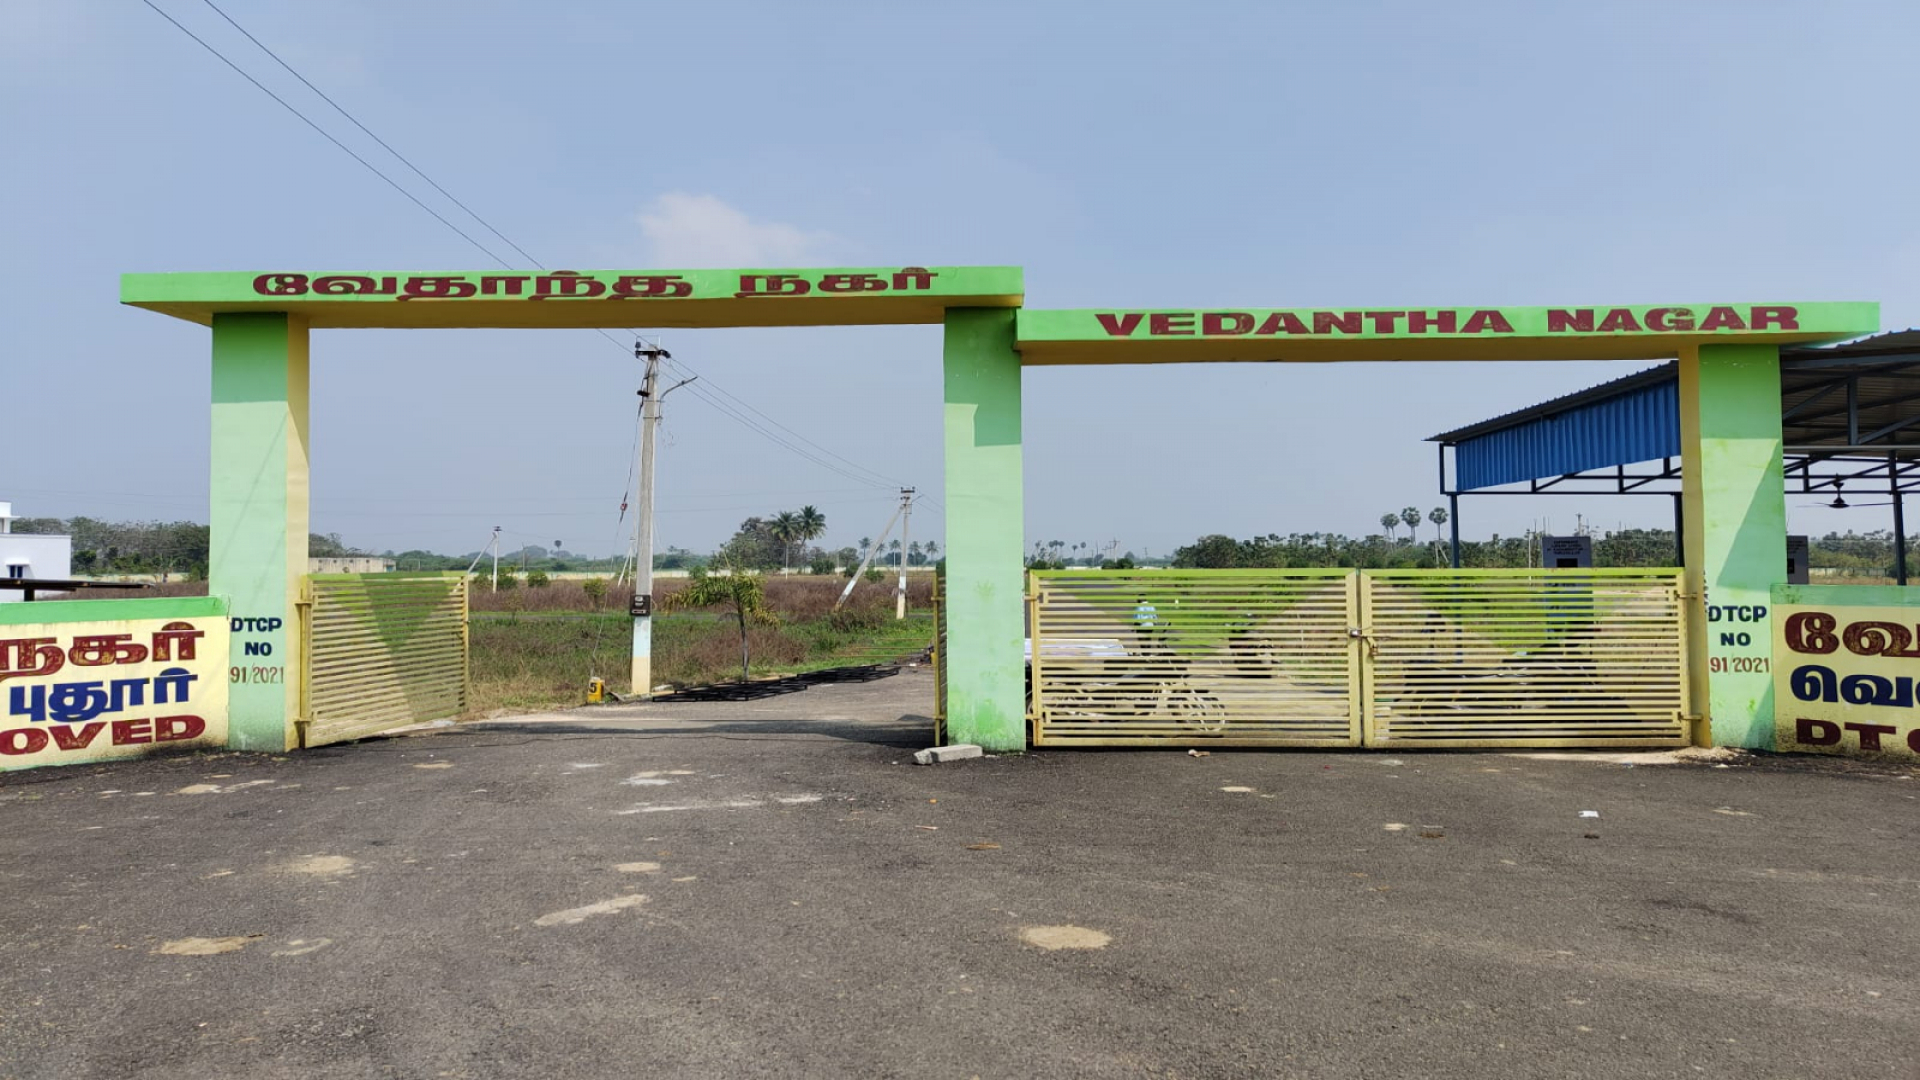 Vedantha Nagar